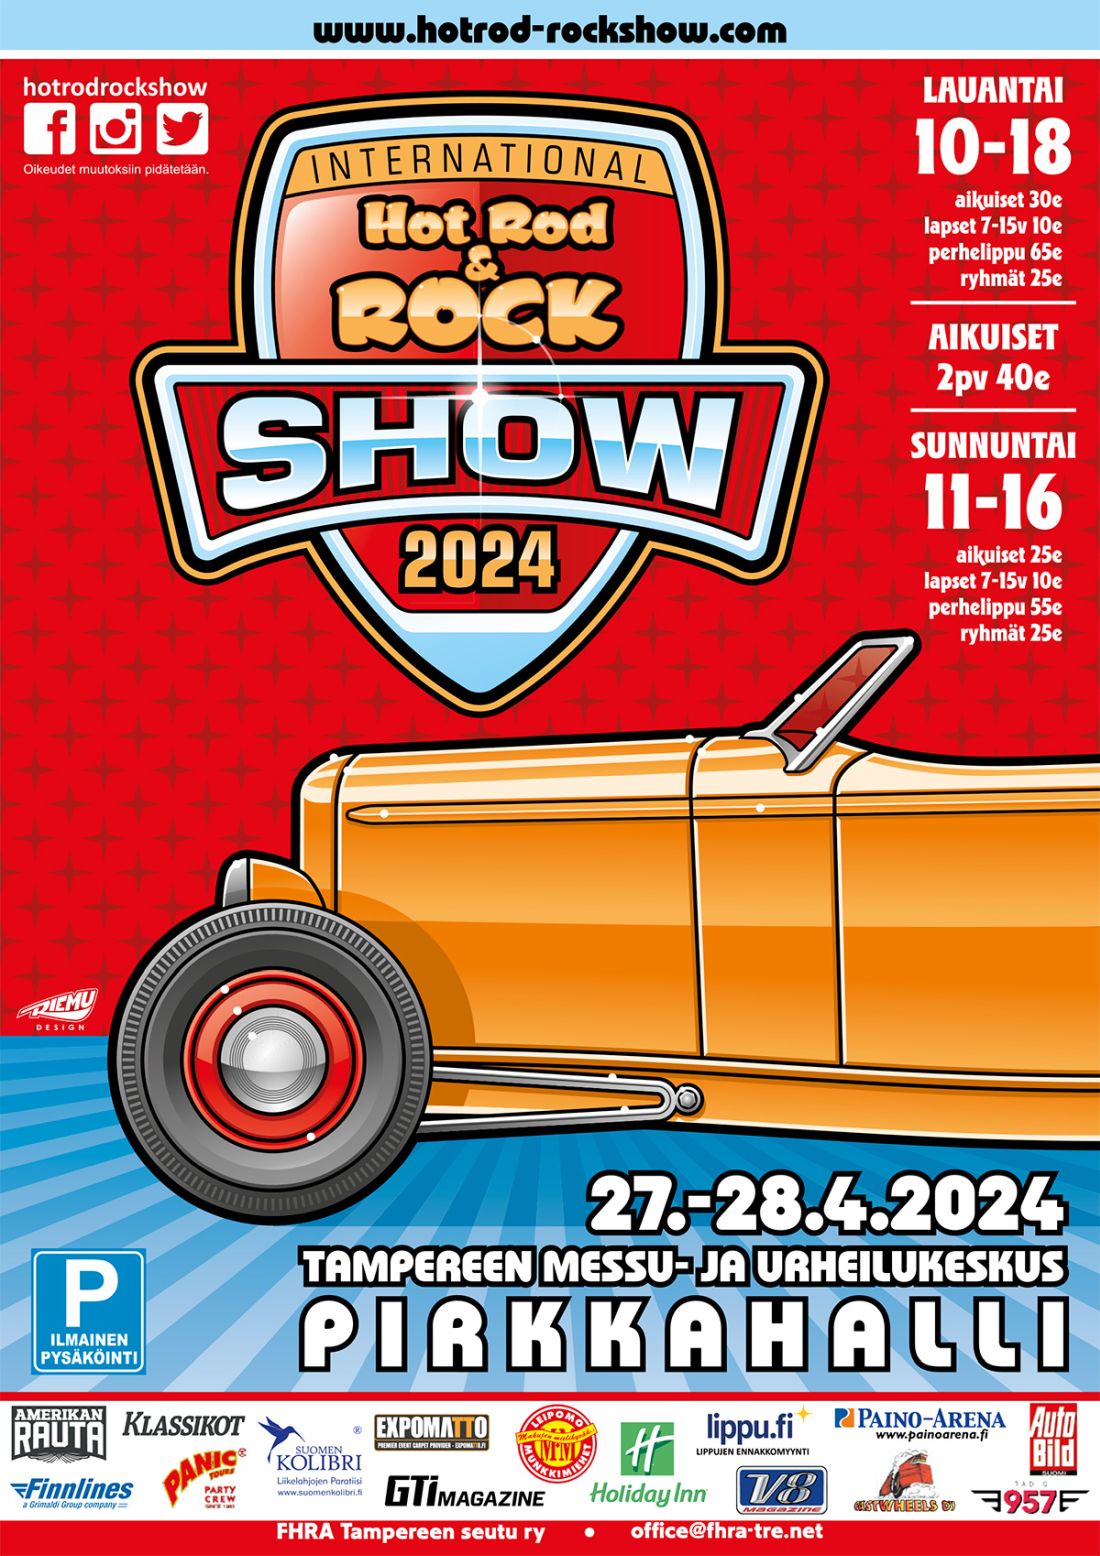 Hot Rod & Rock Show 2024 FHRA Tampere